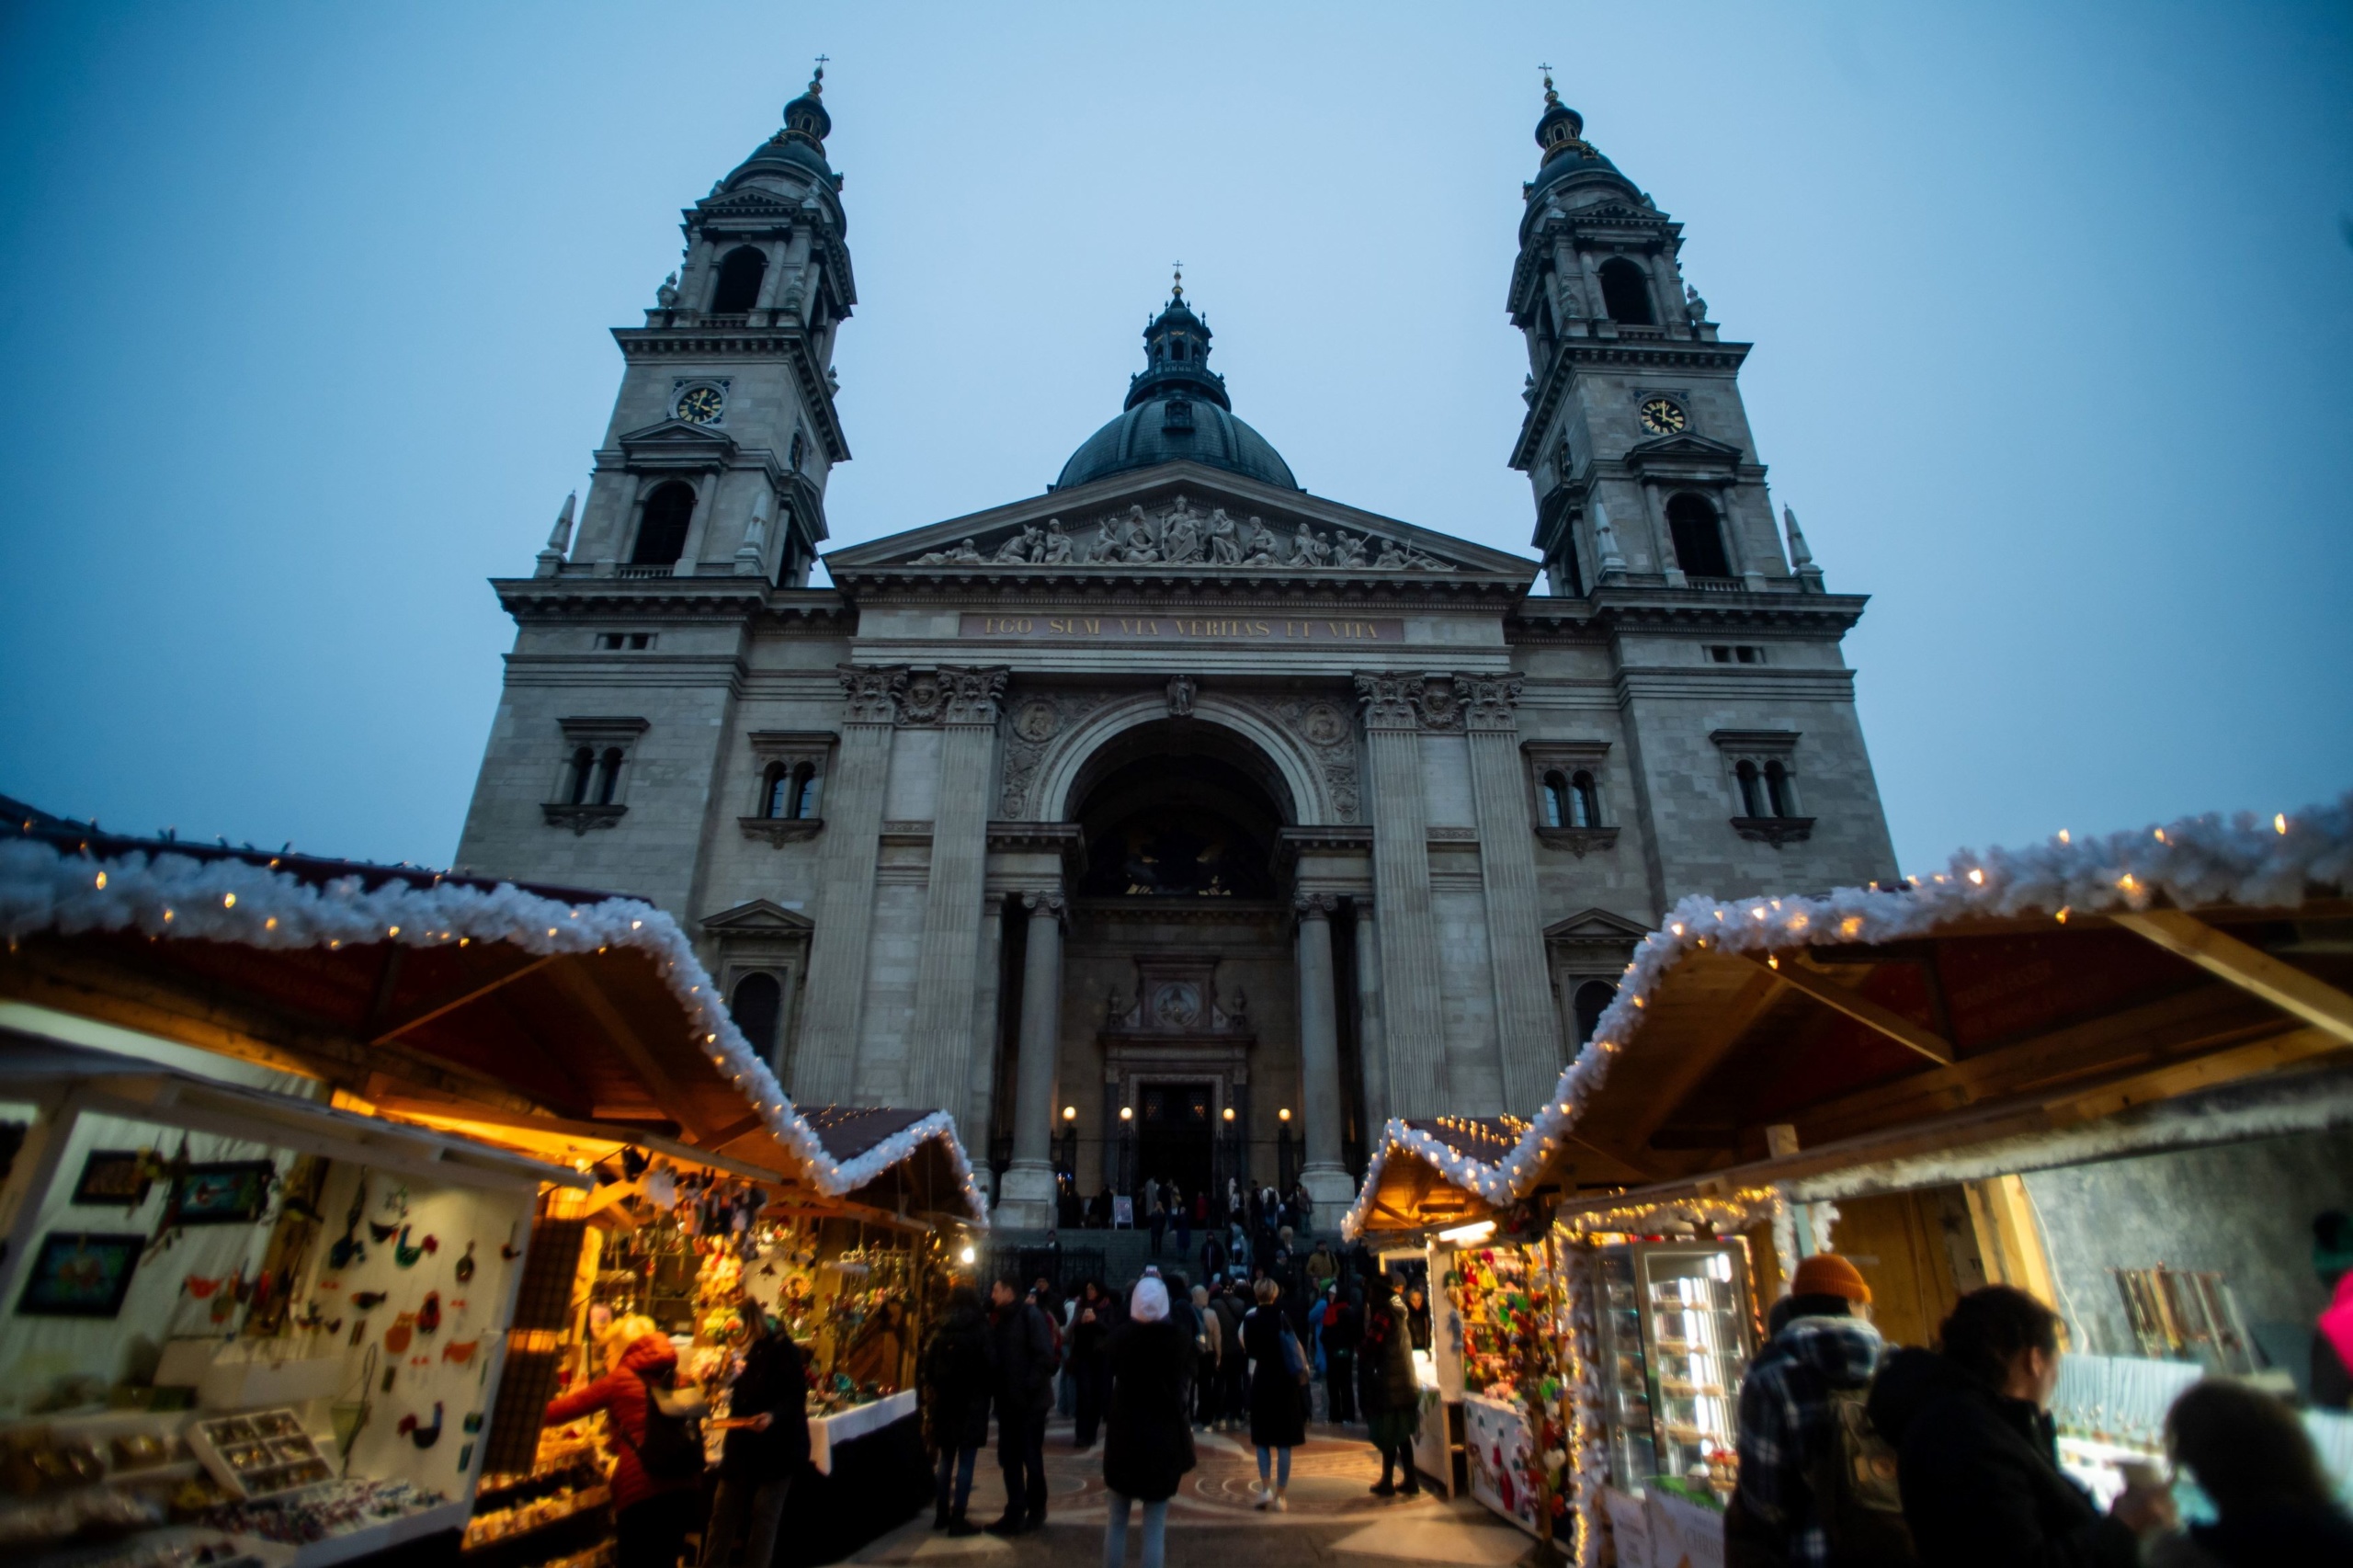 Az Advent Bazilika elnevezésű karácsonyi vásár a megnyitó napján Budapesten, a Szent István-bazilika előtti téren